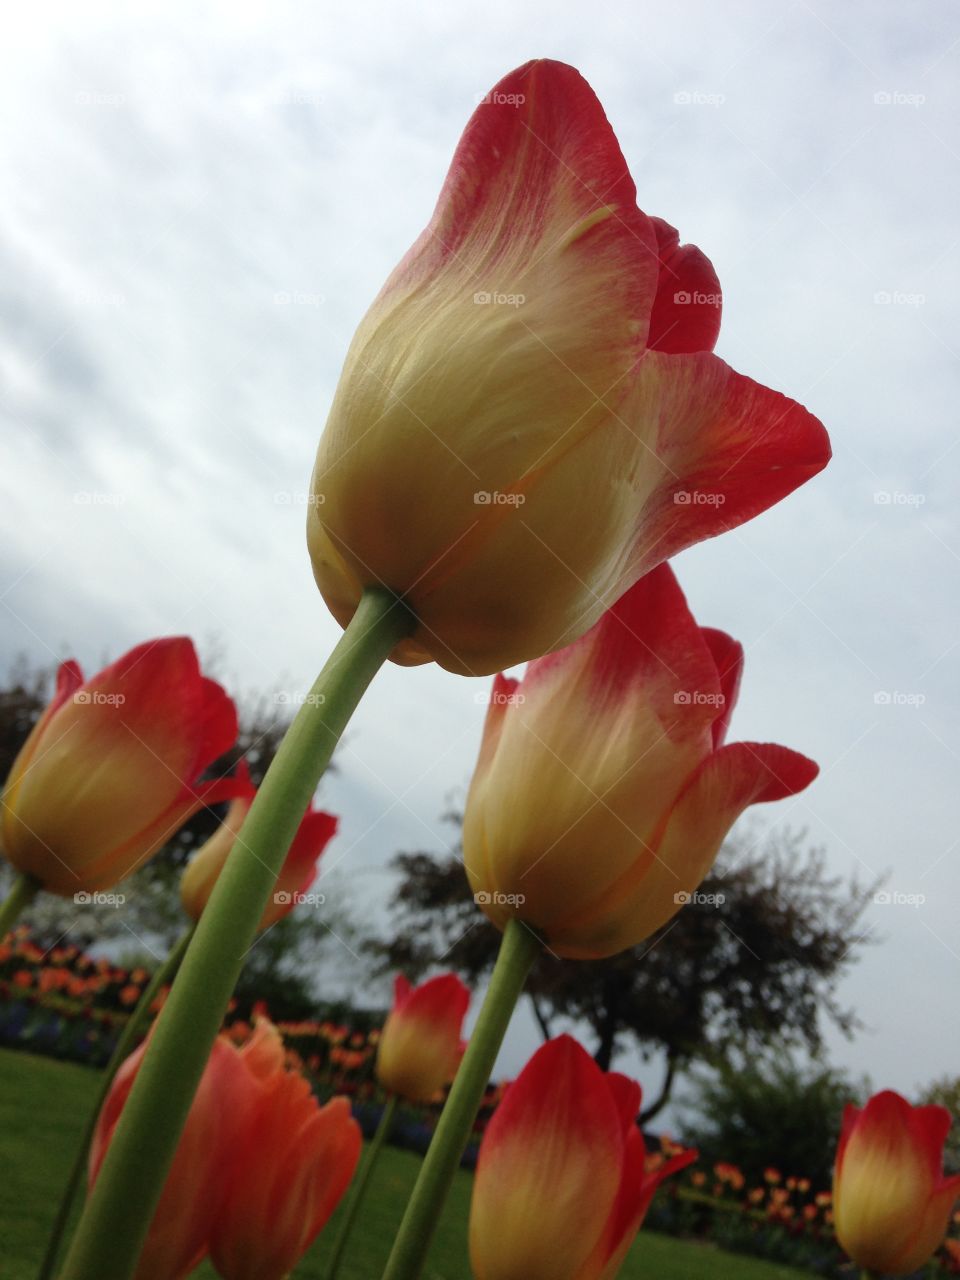 Tulips. Tulips